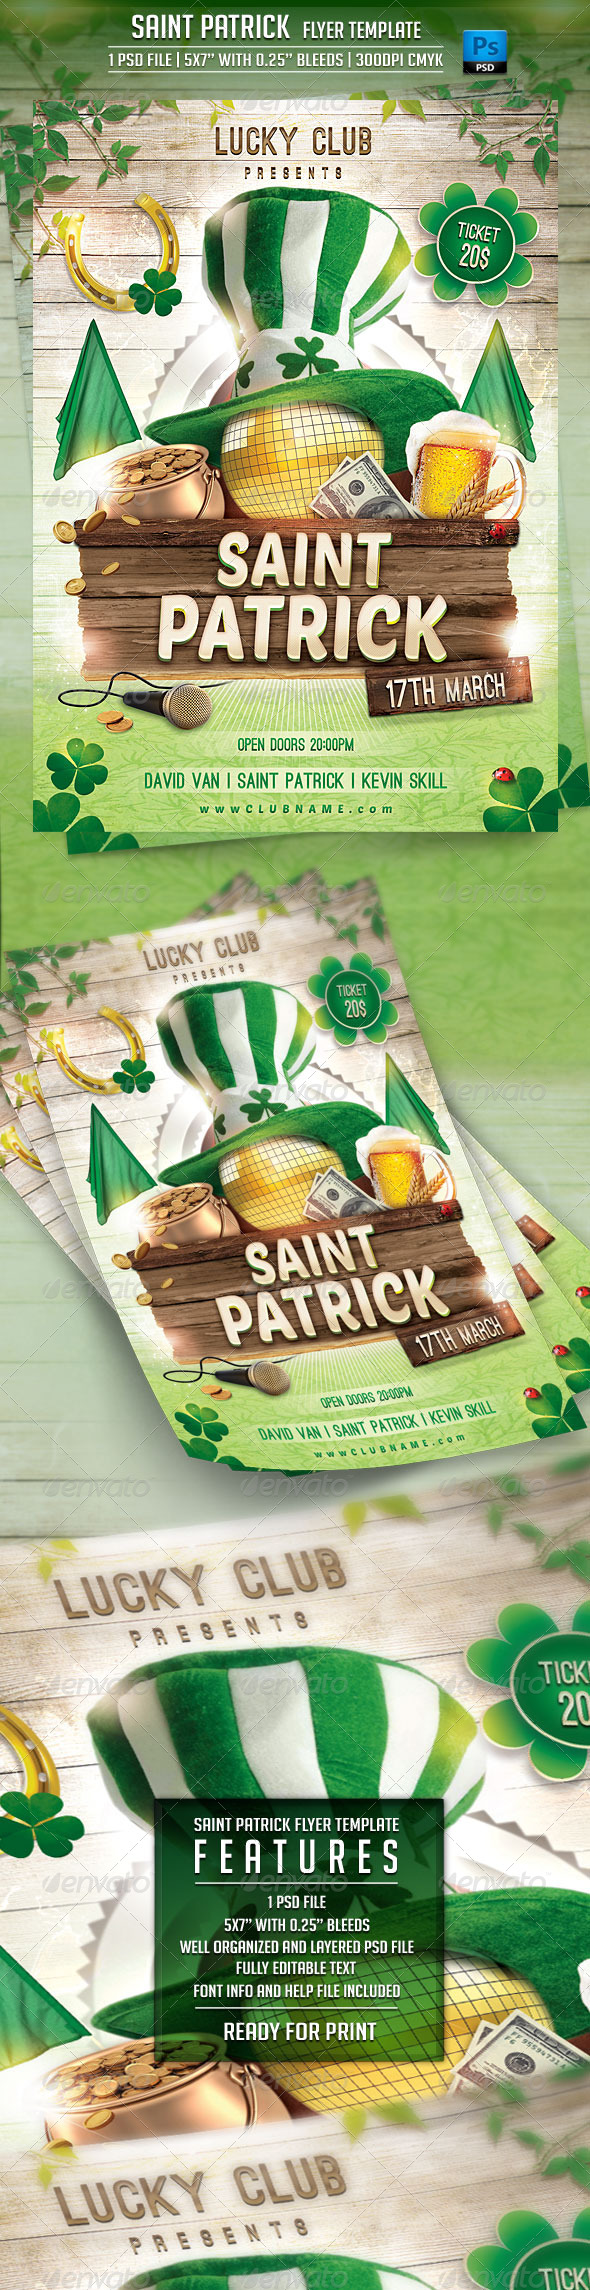 Saint Patrick Flyer Template (Events)